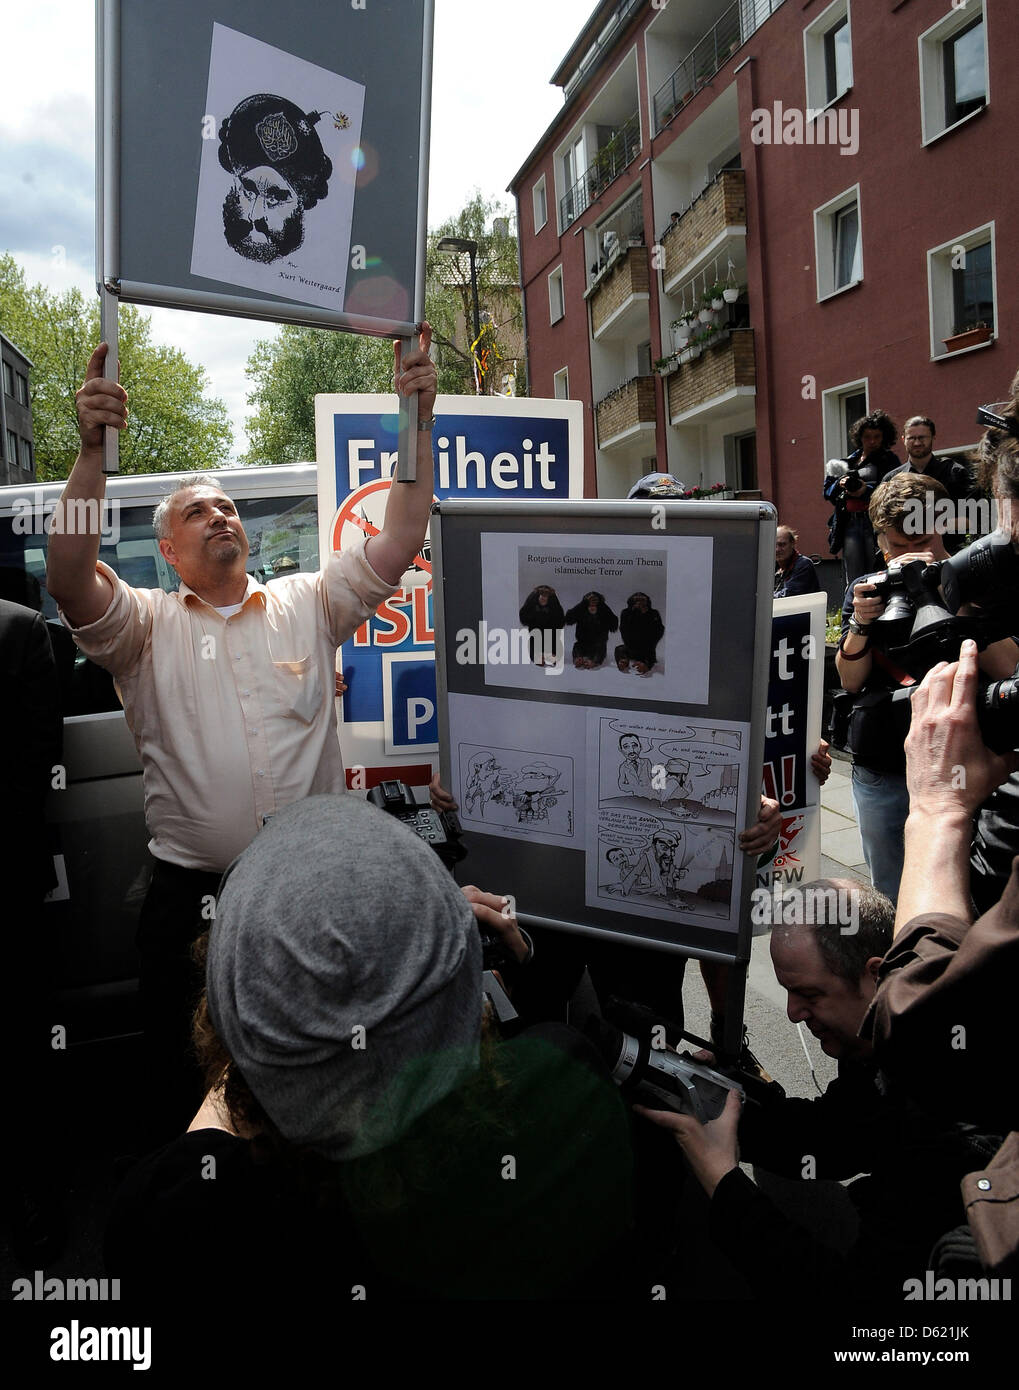 Un membre est titulaire d'une affiche avec une charicature Mohammad pendant un rassemblement par le groupe dissident Pro NRW à Cologne, Allemagne, 08 mai 2012. Le rassemblement près de la nouvelle mosquée DITIB a eu lieu sans incident. Photo : HENNING KAISER Banque D'Images